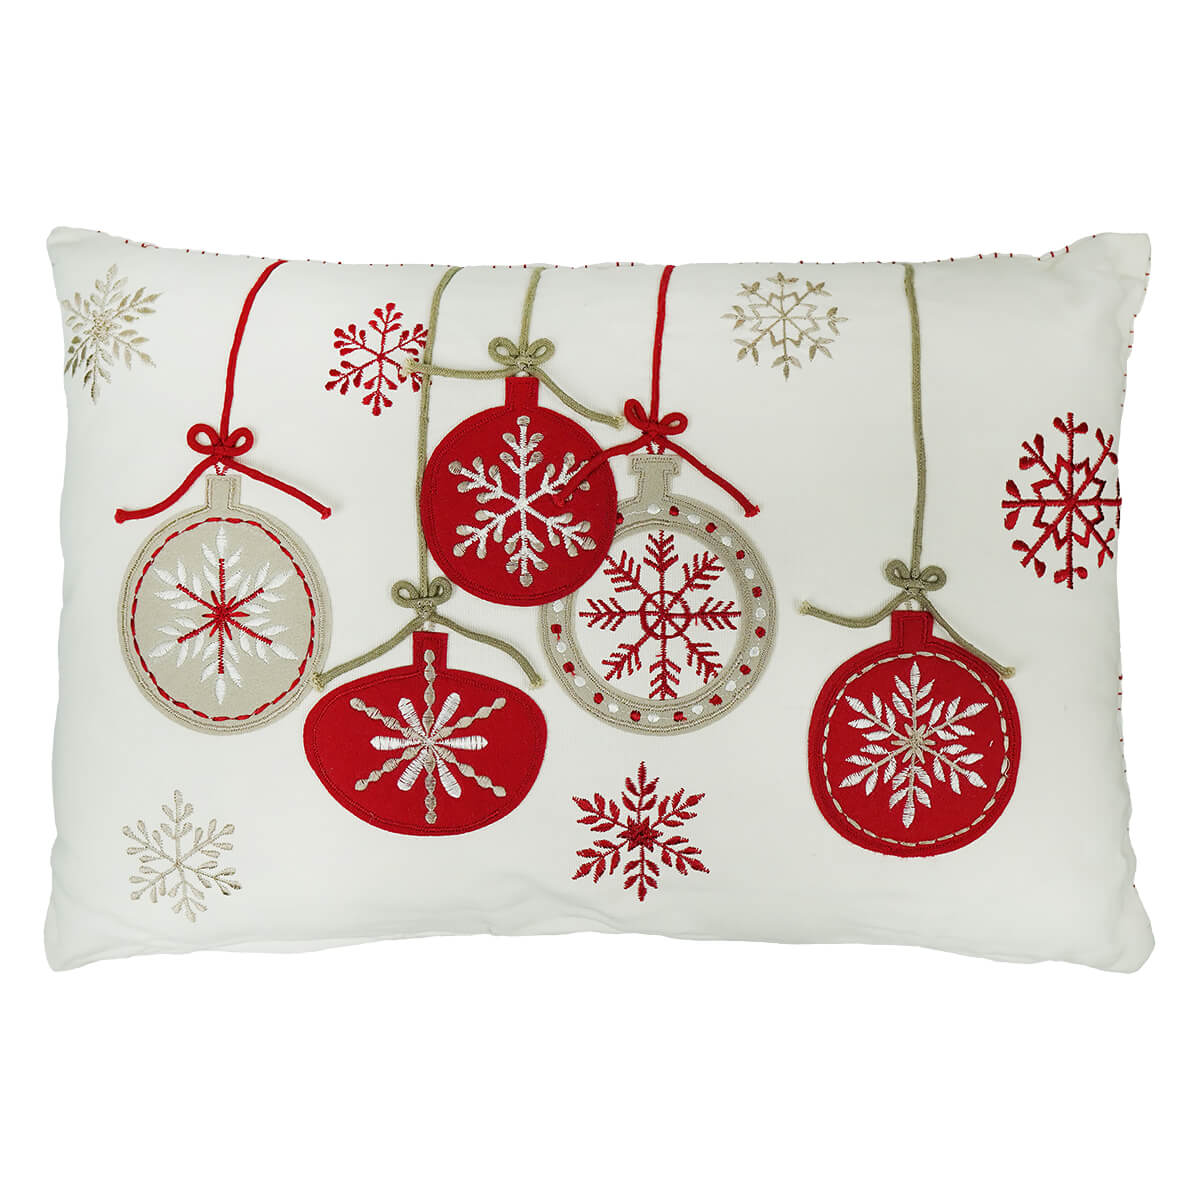 Rectangular White Pillow With Felt Ornaments & Snowflakes